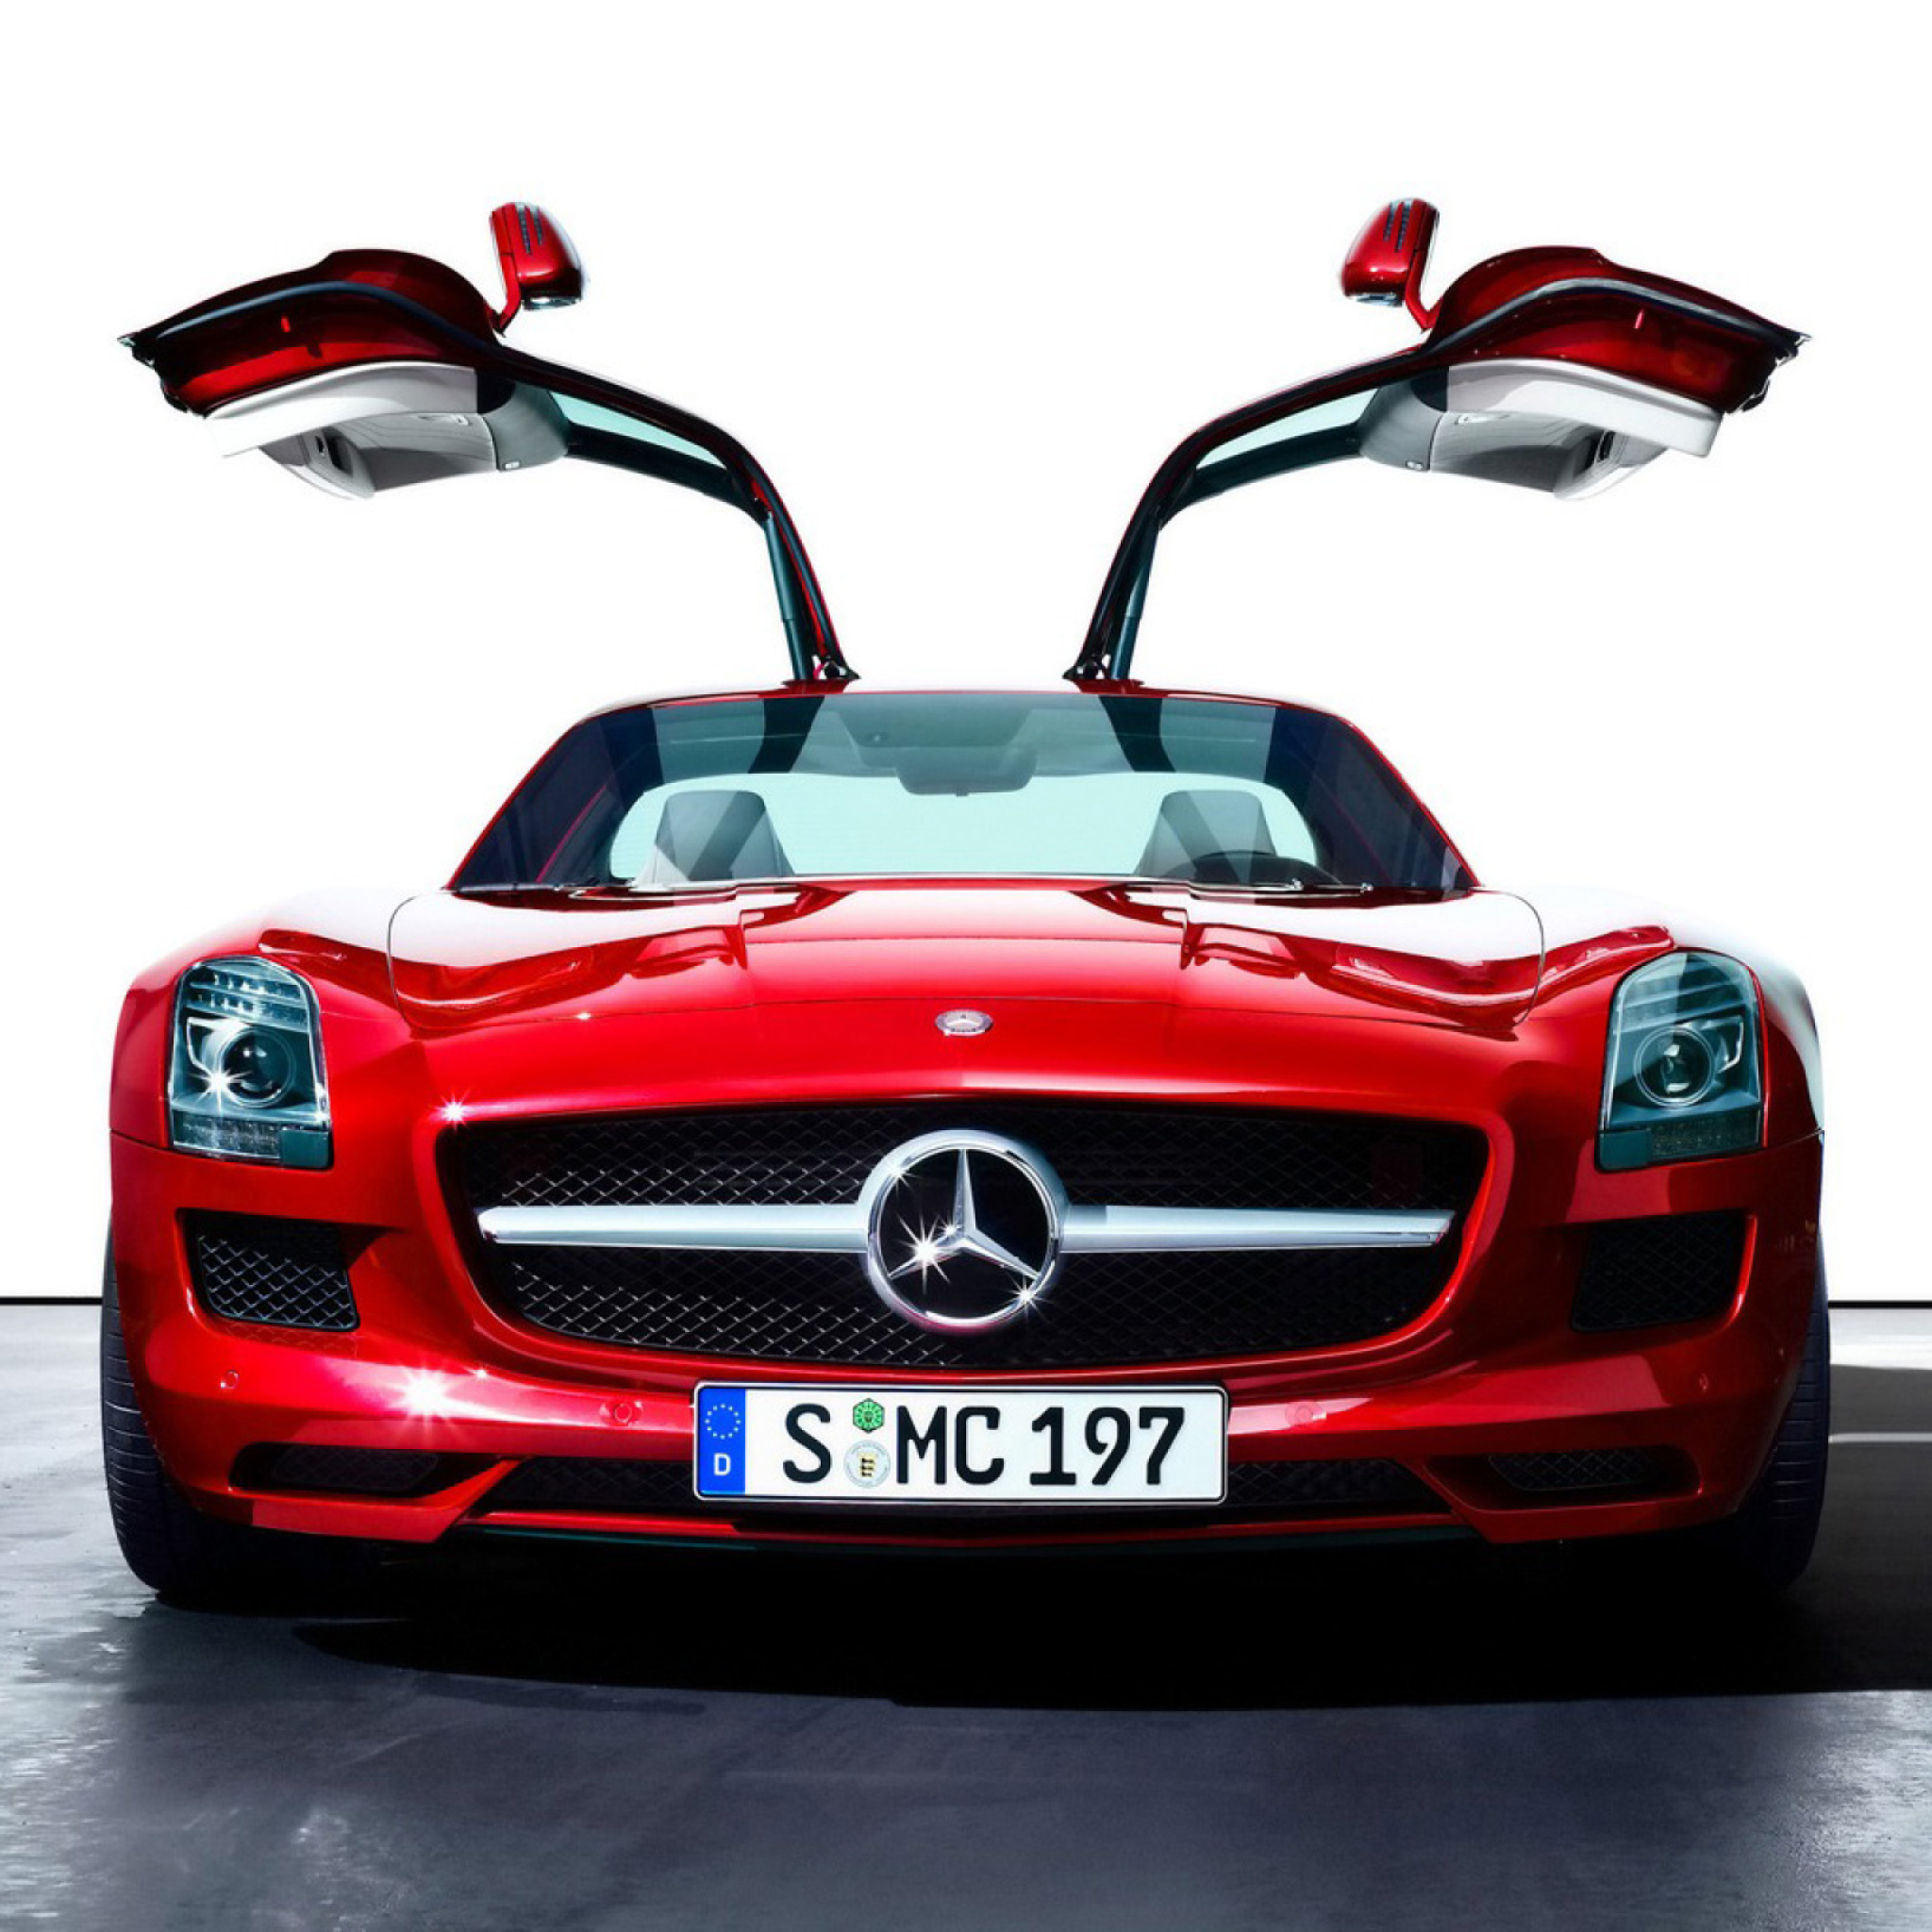 Mercedes-Benz E красный автомобиль red car бесплатно